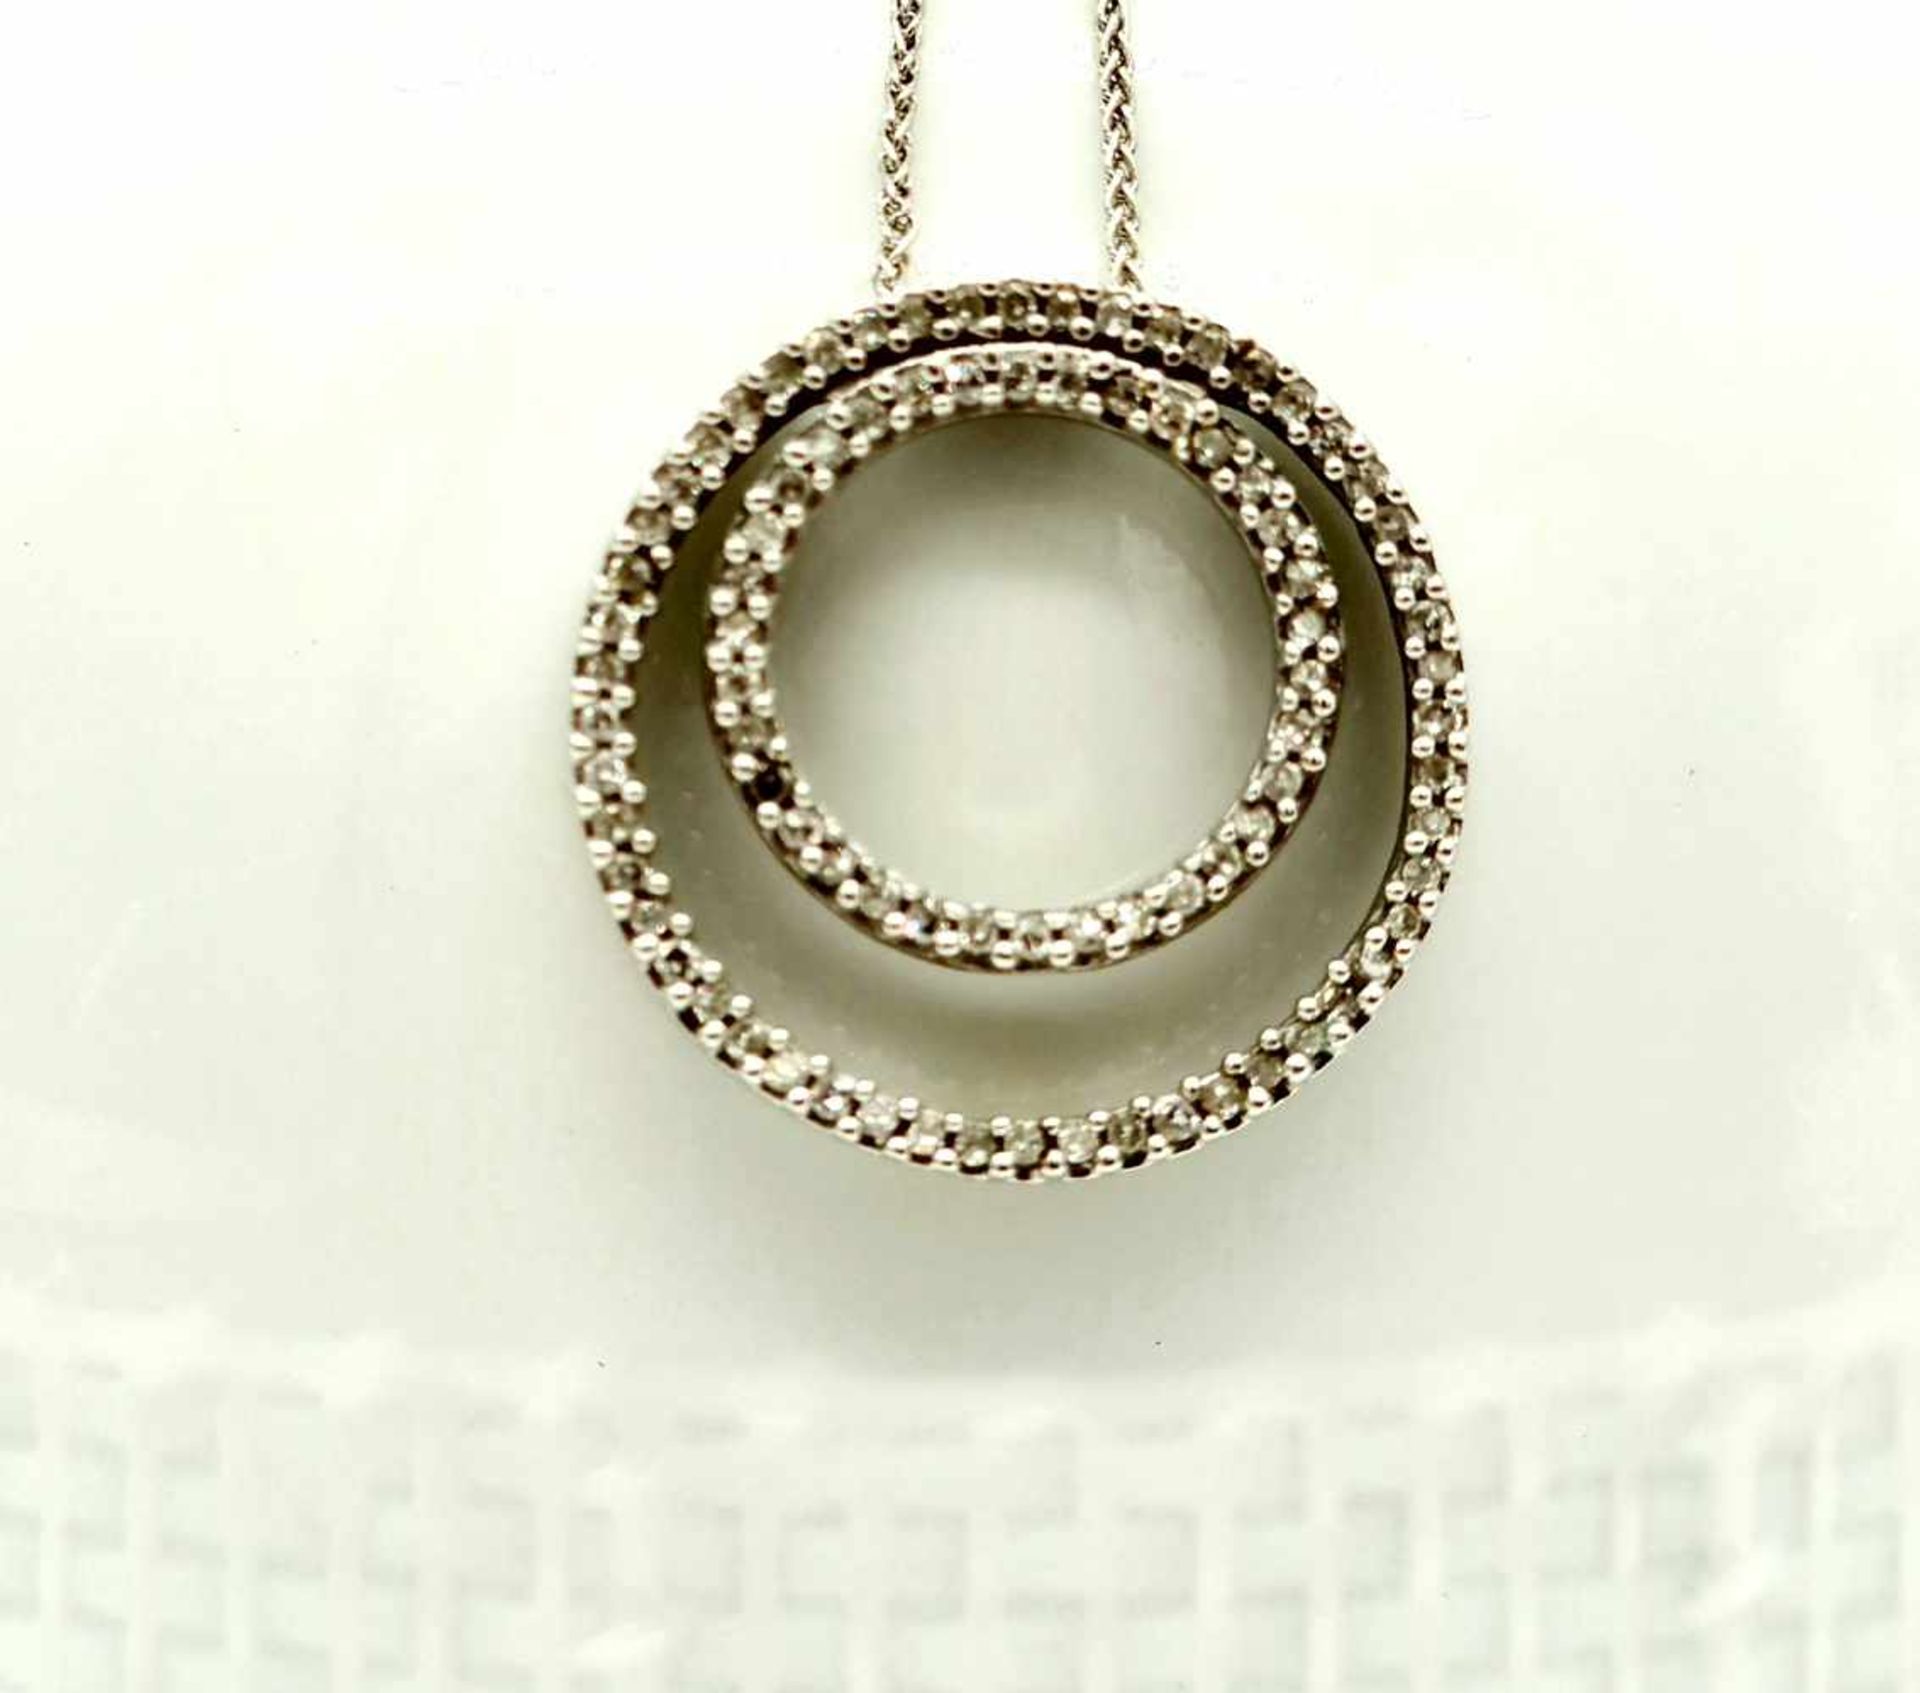 Diamantanhänger mit Halskette , Gold 585, Ketten Länge: 44cm, Diamantanhänger Durchmesser: - Bild 2 aus 2